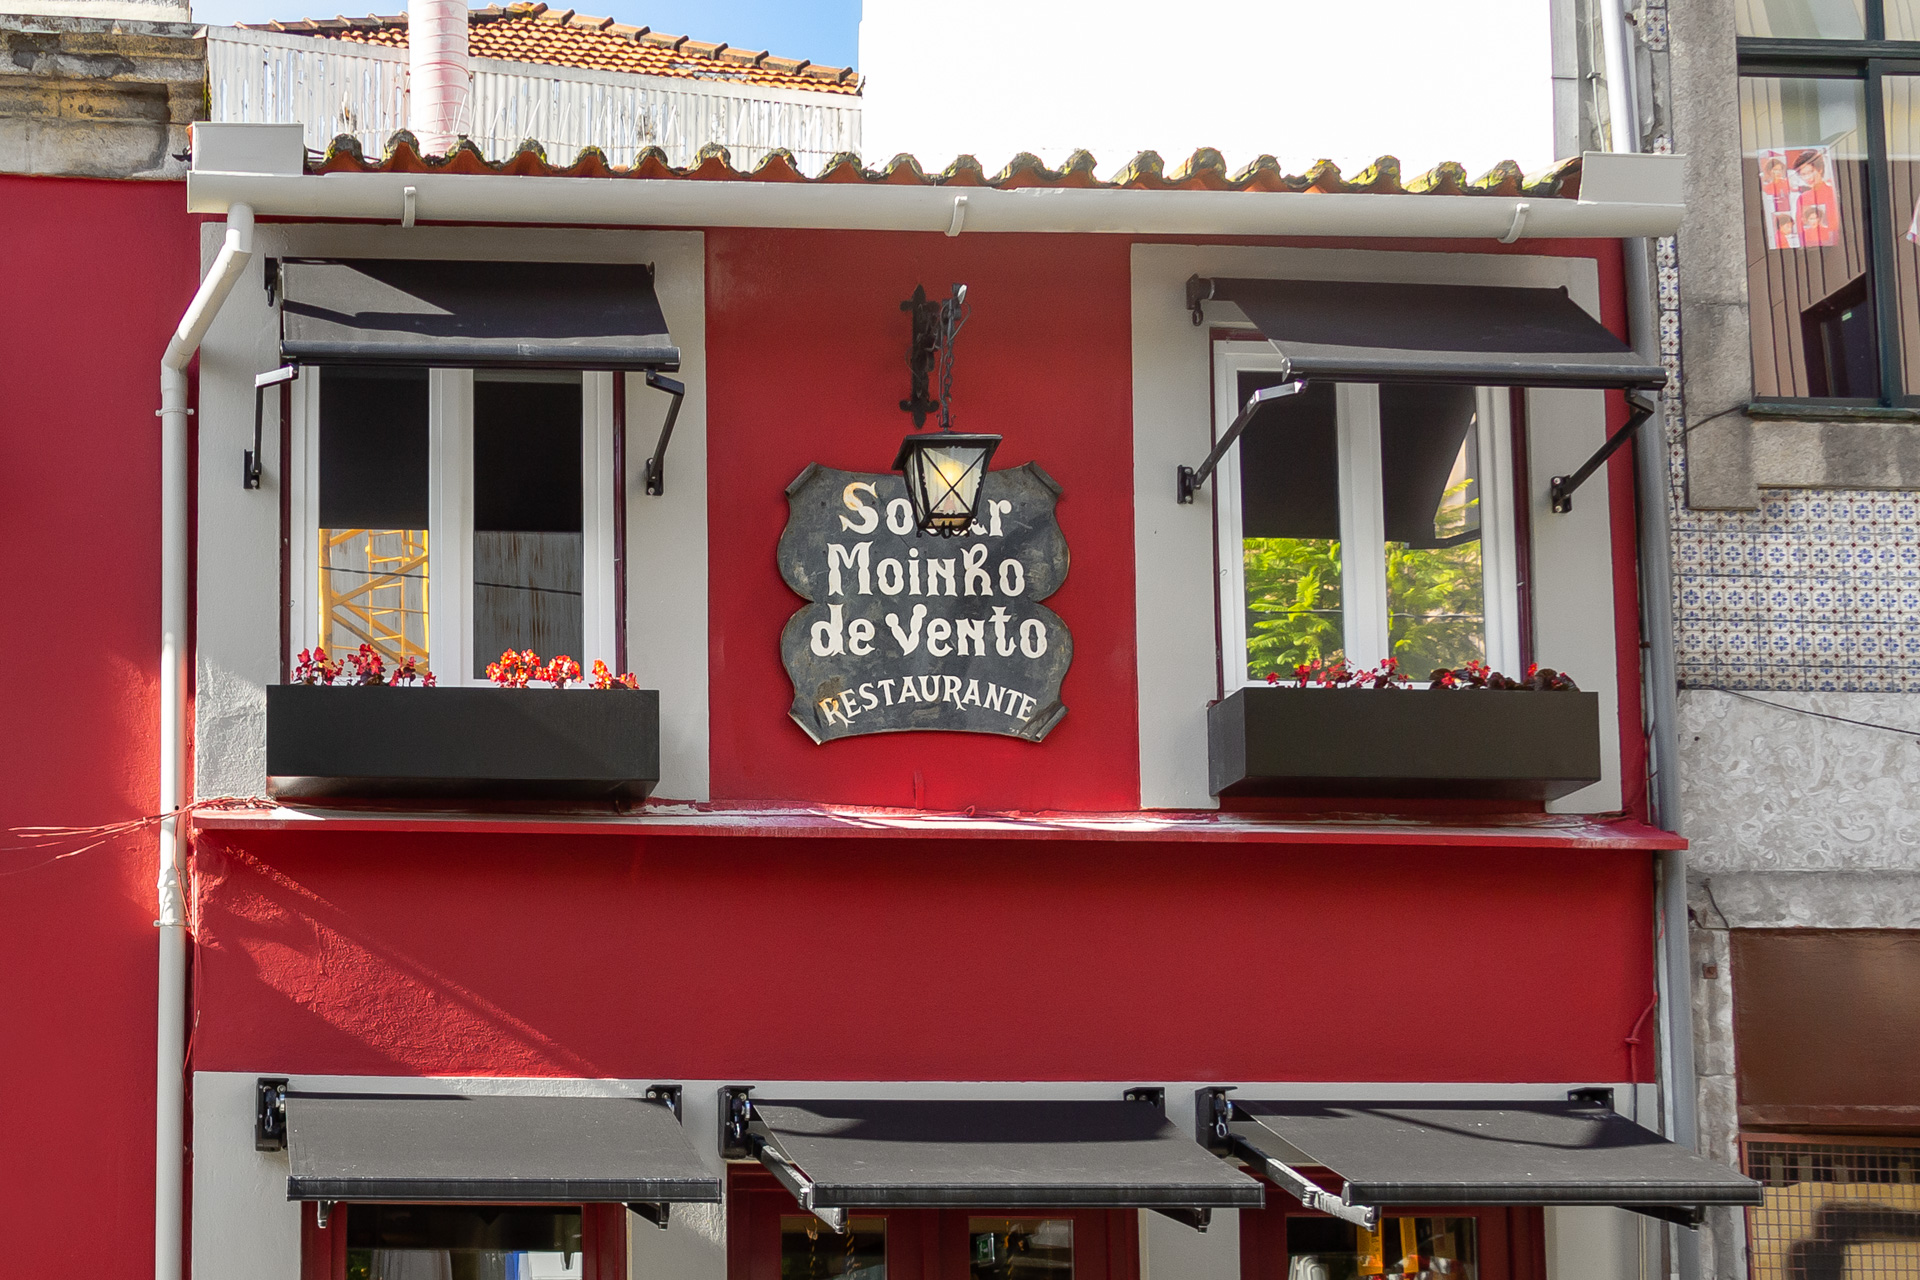 SOLAR MOINHO DE VENTO - R. de Sá de Noronha, Nordjylland, Porto, Portugal -  Portuguese - Restaurant Reviews - Phone Number - Yelp